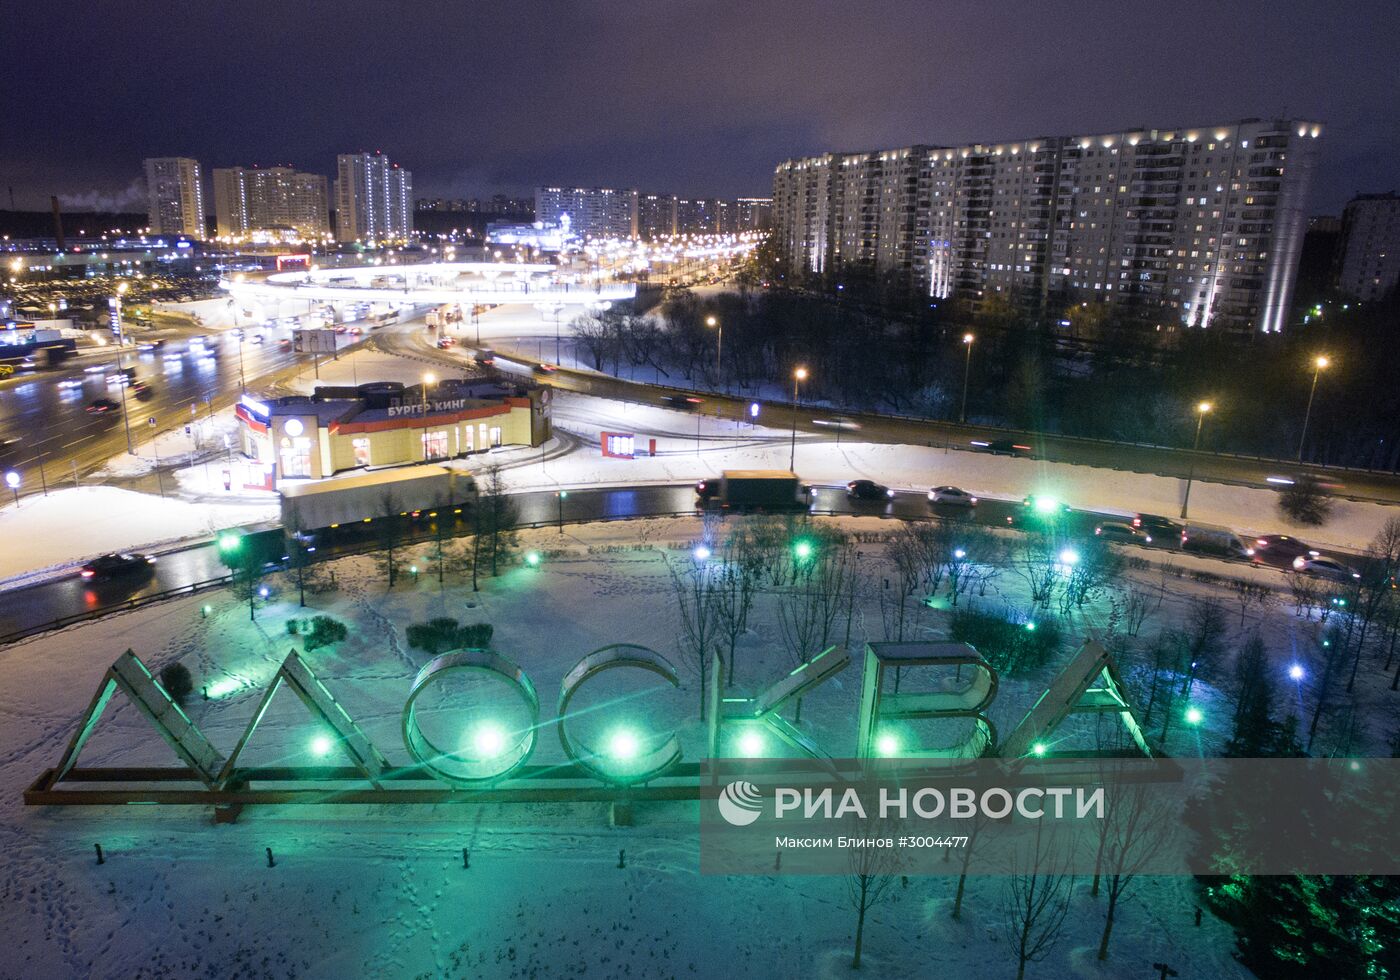 Конструкция с надписью "Москва" на въезде в город возле перечения МКАД и Варшавского шоссе